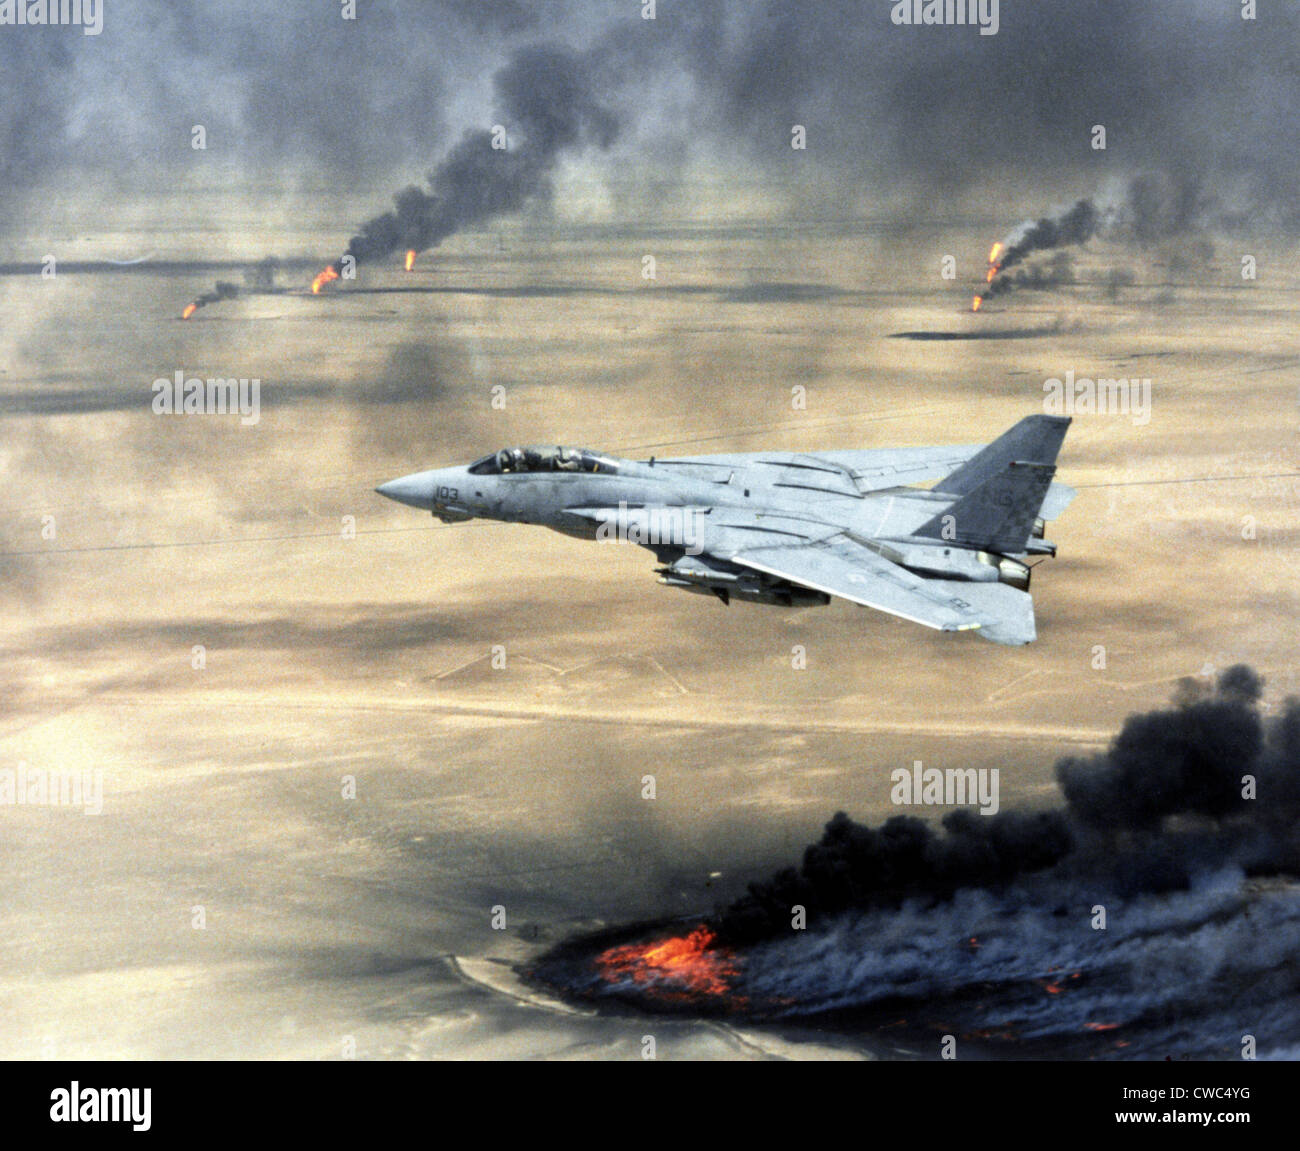 F-14 fighter in volo sopra la masterizzazione kuwaitiana pozzi petroliferi impostato sul fuoco ritirando le forze irachene durante l'operazione tempesta del deserto. Foto Stock